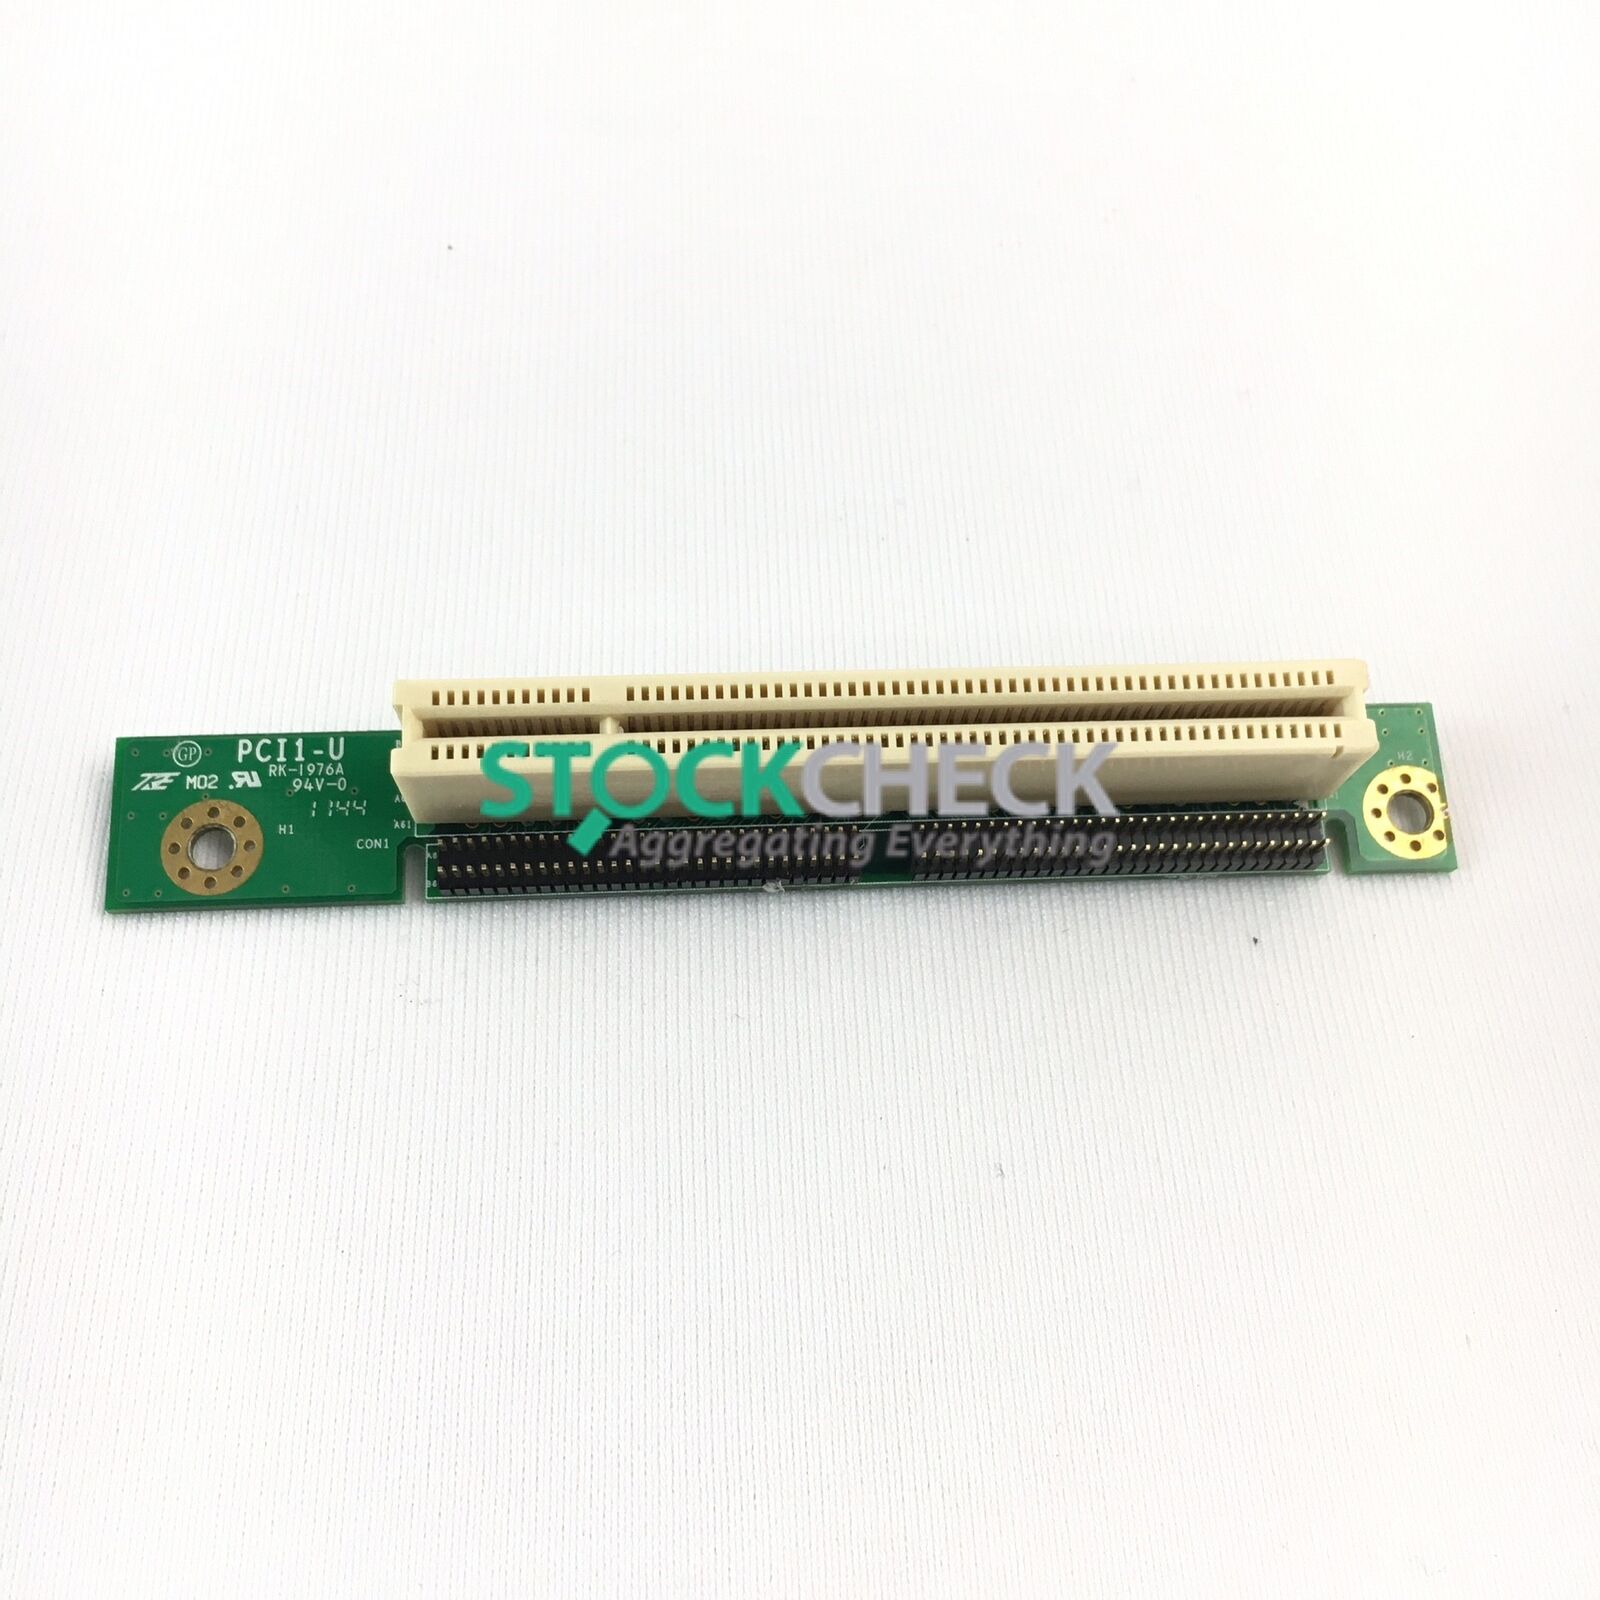 Supermicro PCI1-U Riser Card